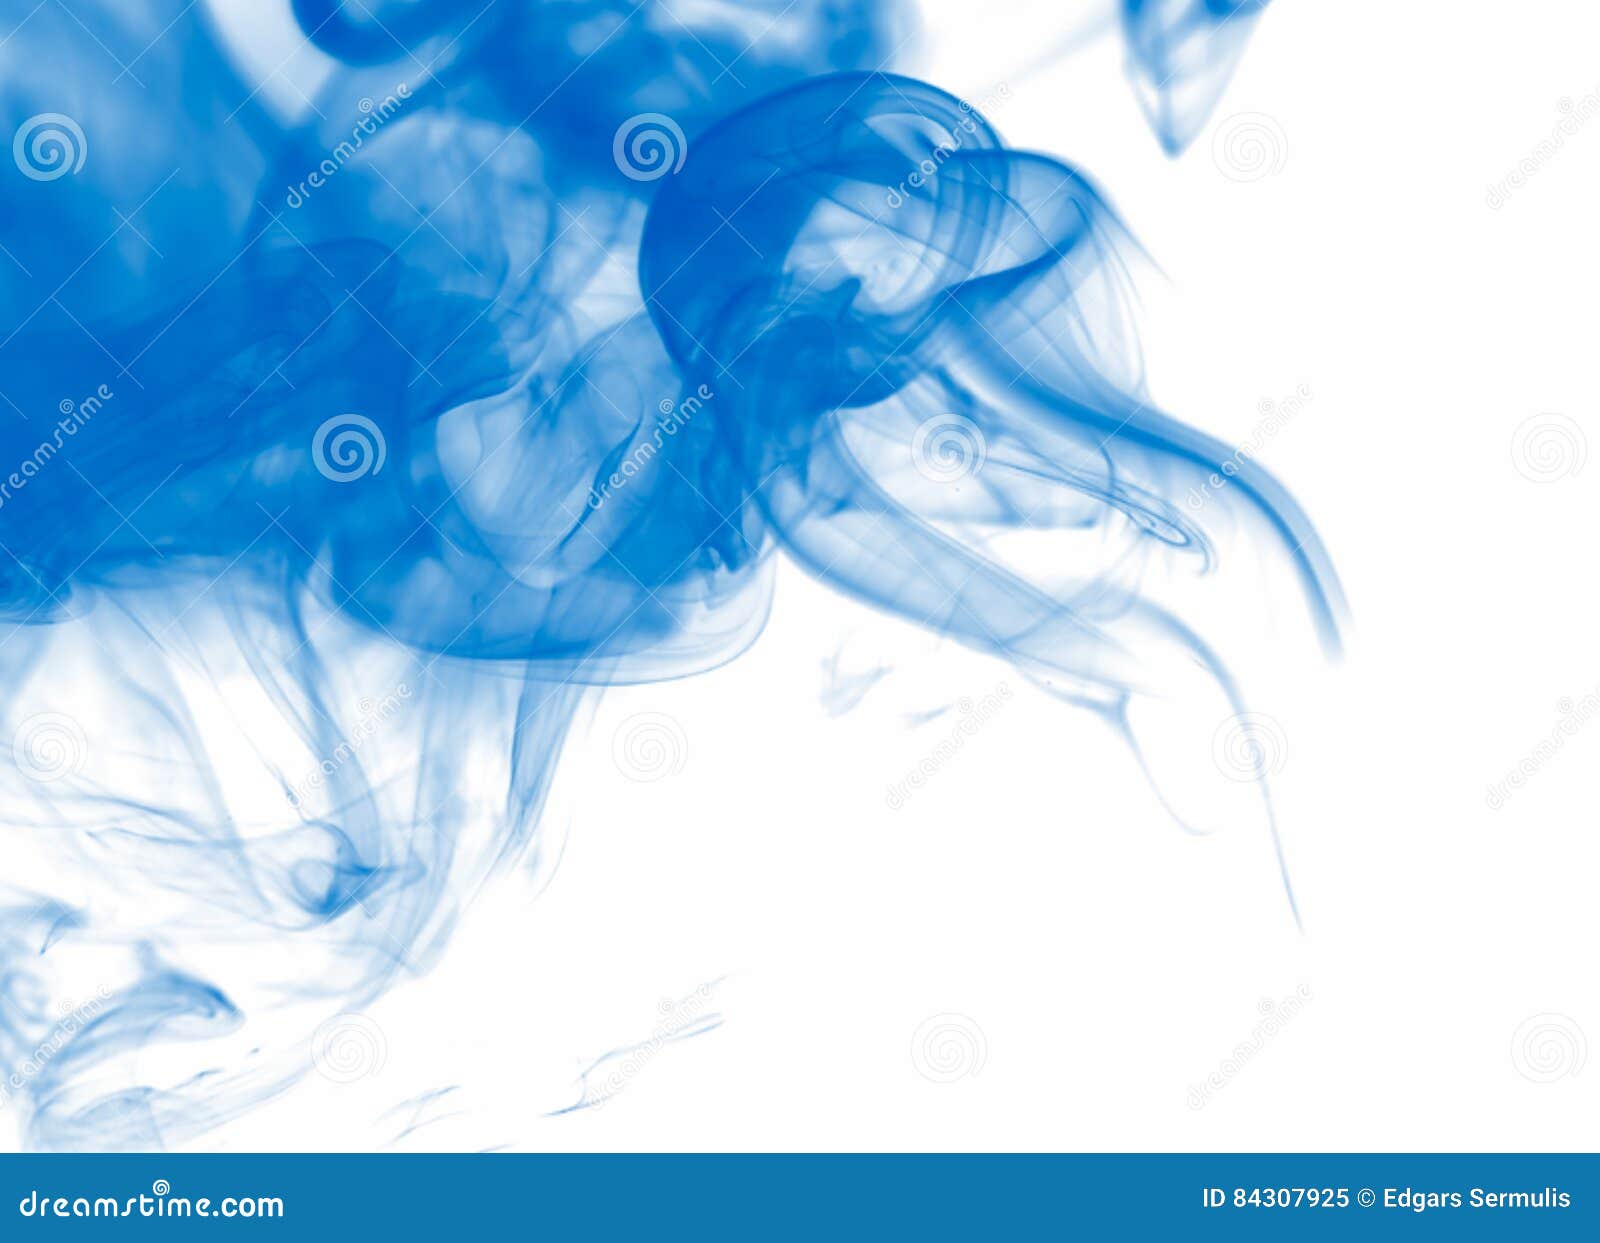 Blauwe Op Een Witte, Heldere Abstracte Achtergrond Stock - of begrip, sigaret: